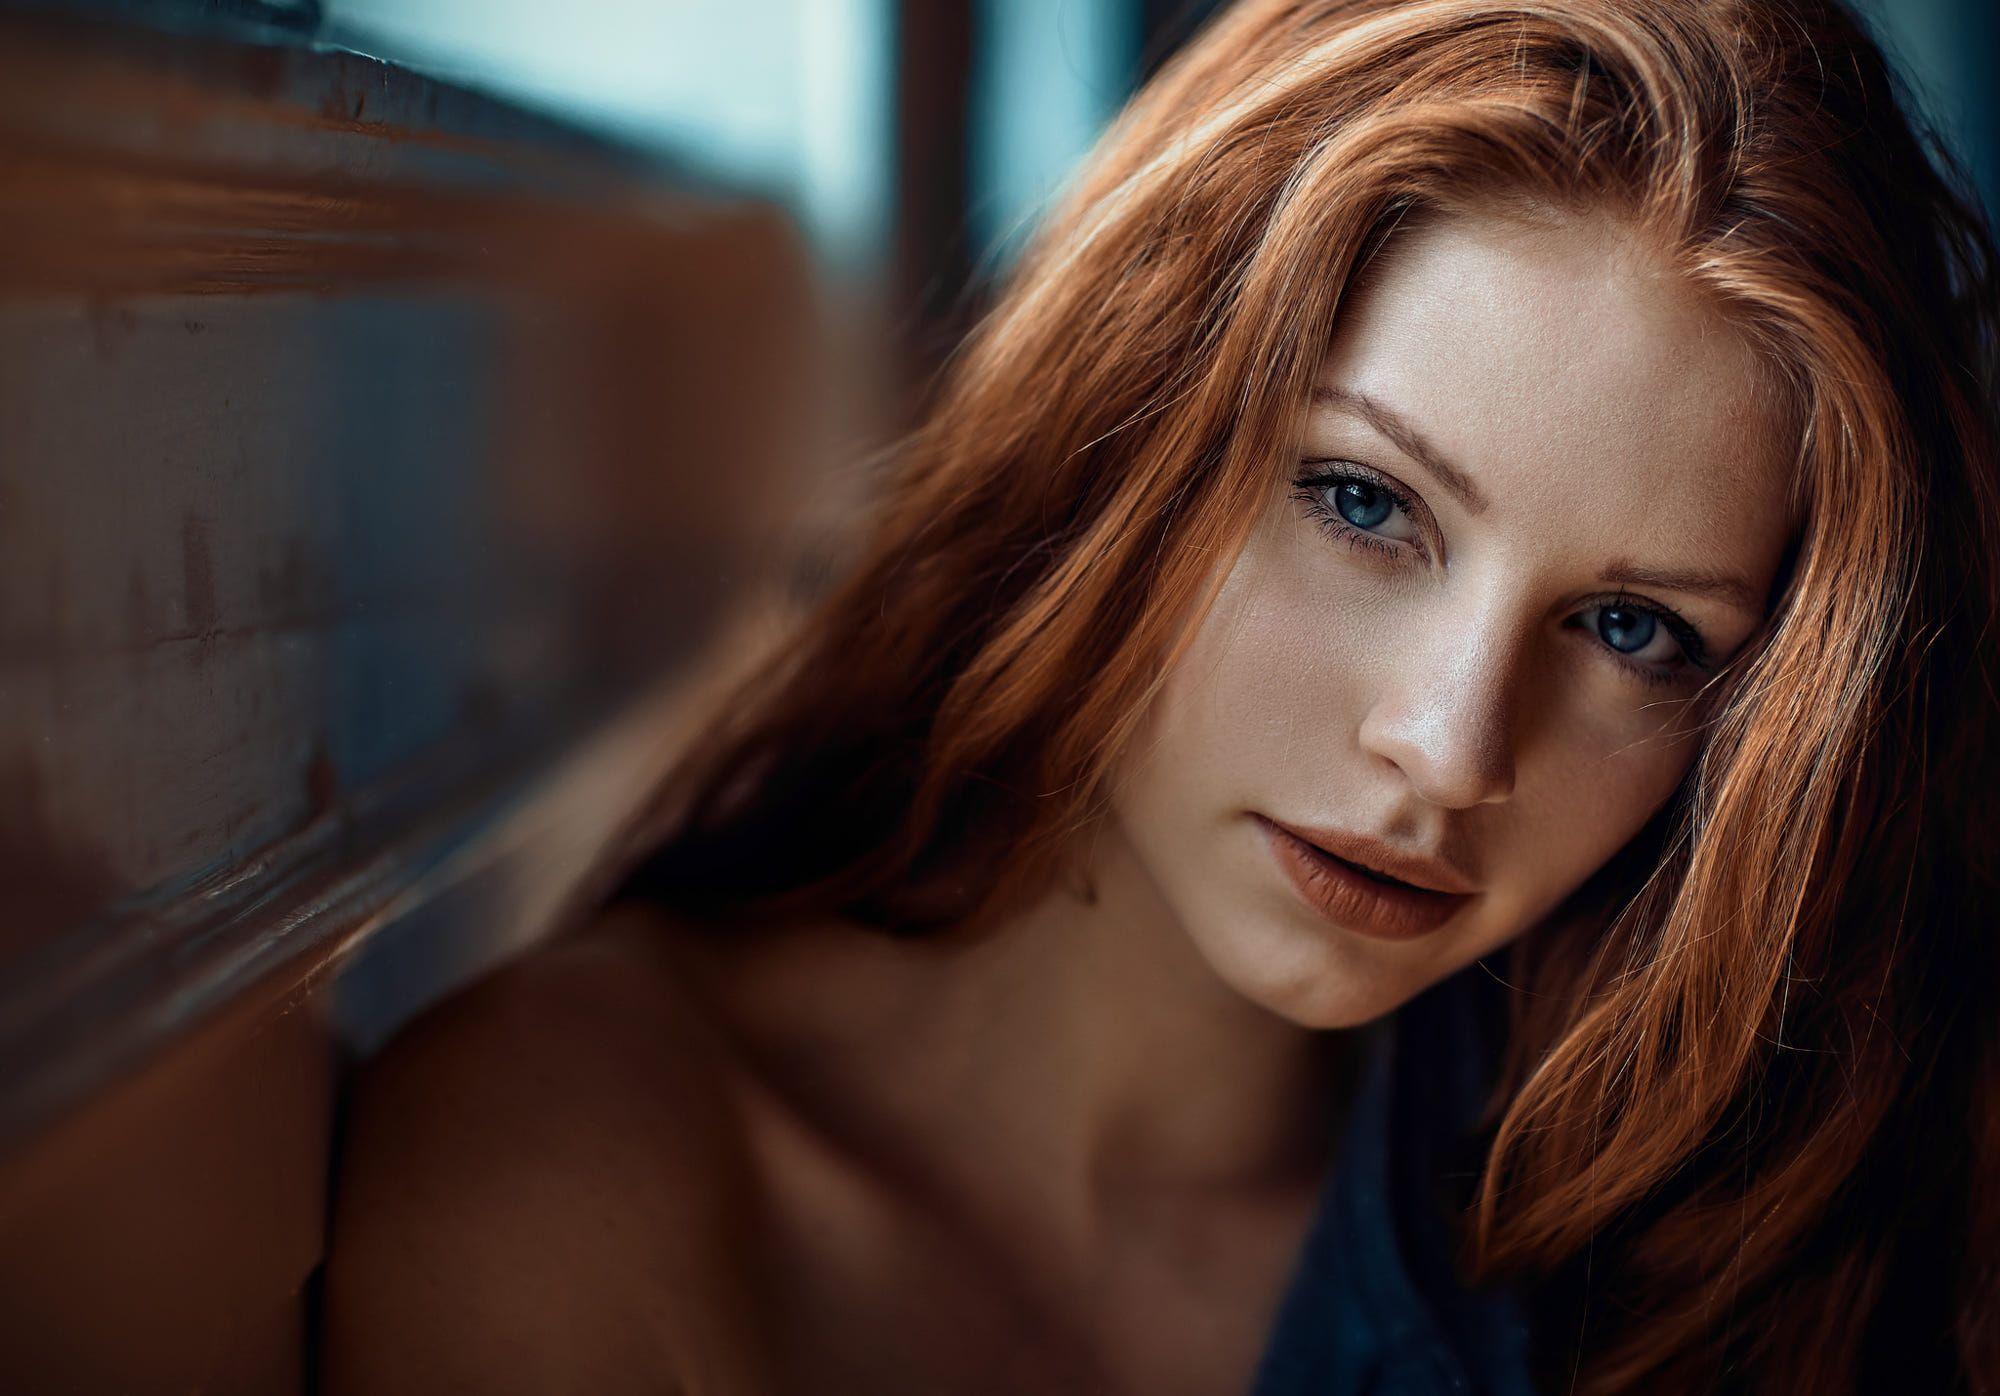 #closeup, #Paul Pour, #women, #redhead, #portrait, #face